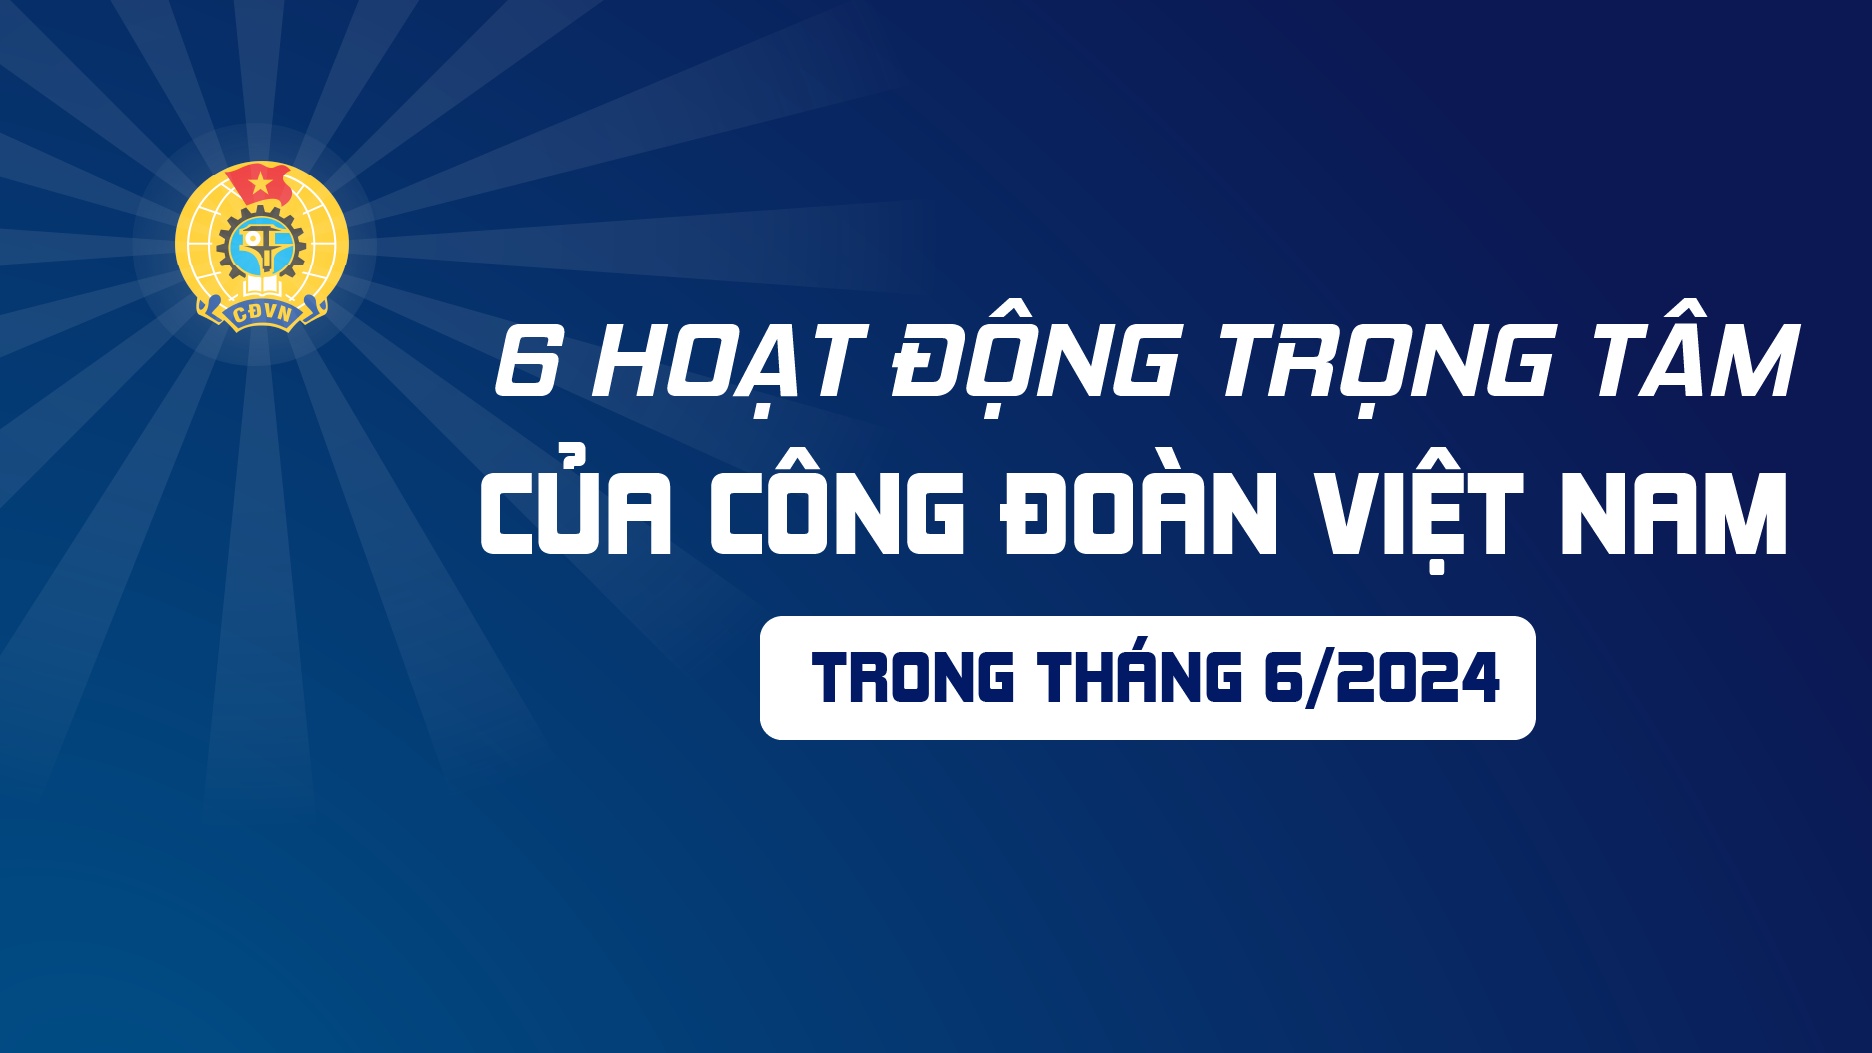 6 hoạt động trọng tâm của Công đoàn Việt Nam trong tháng 6/2024